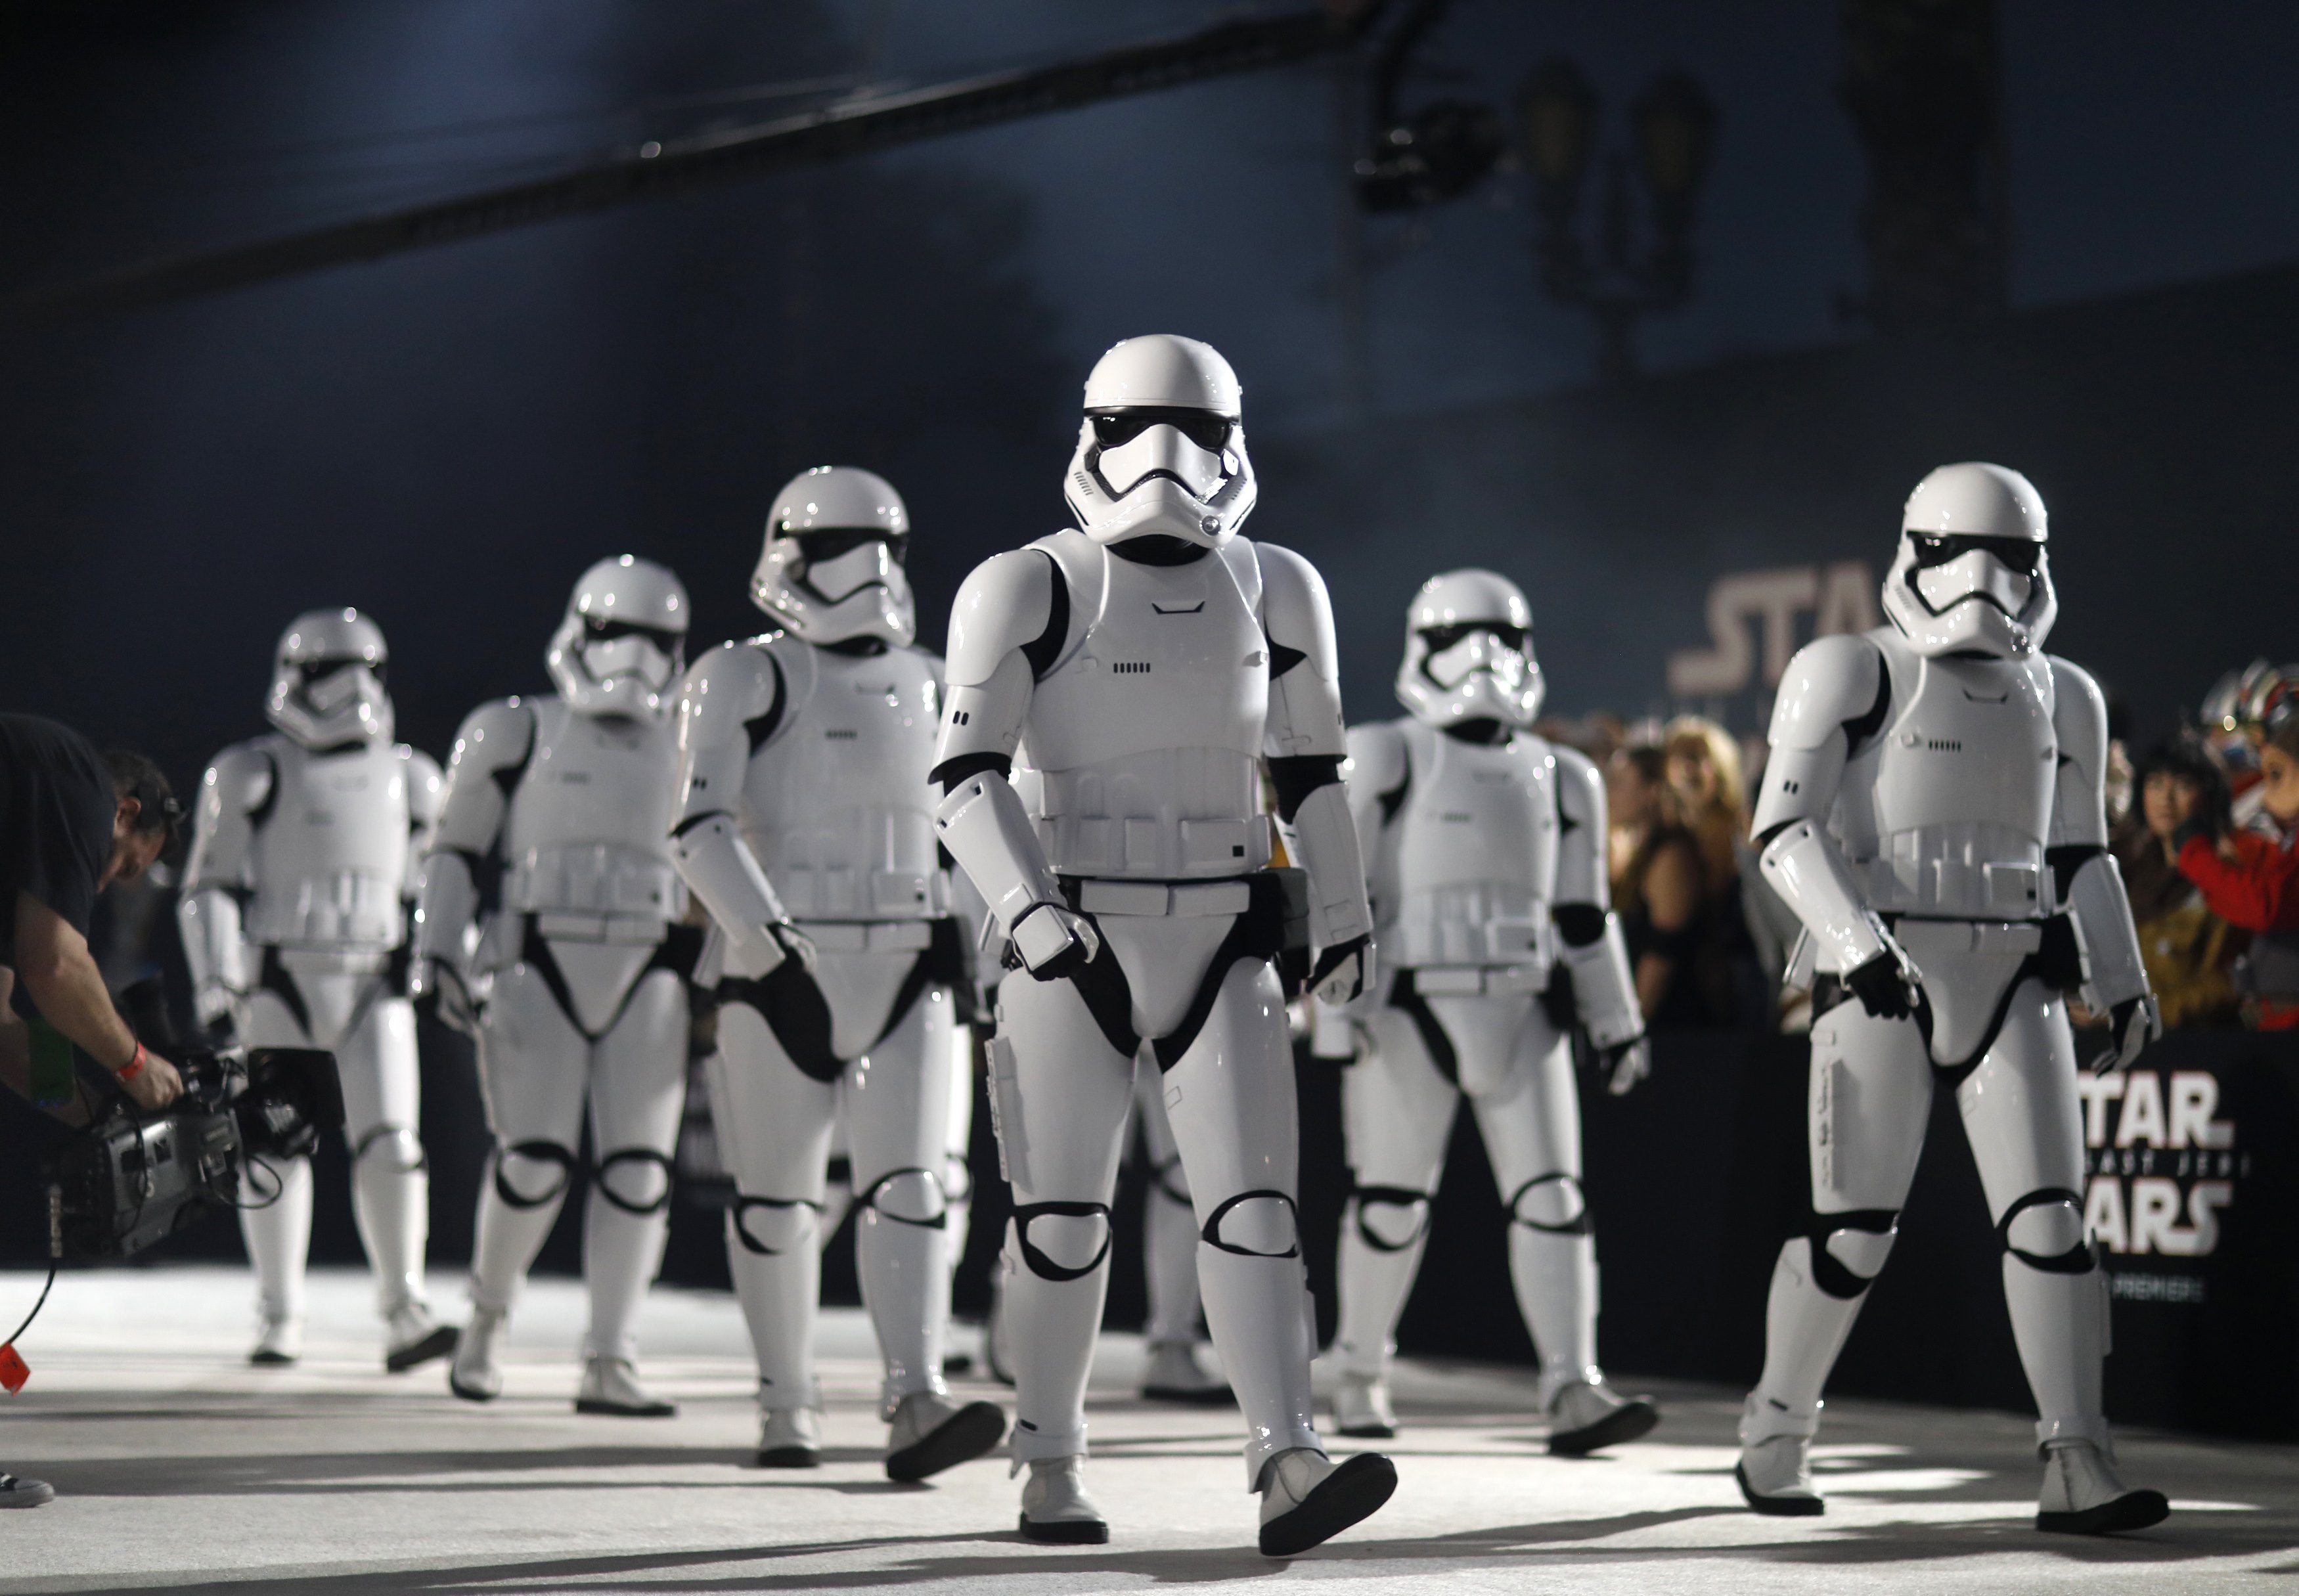 Οι φαν του Star Wars ψηφίζουν Μέριλ Στριπ για τη θέση της Λέια